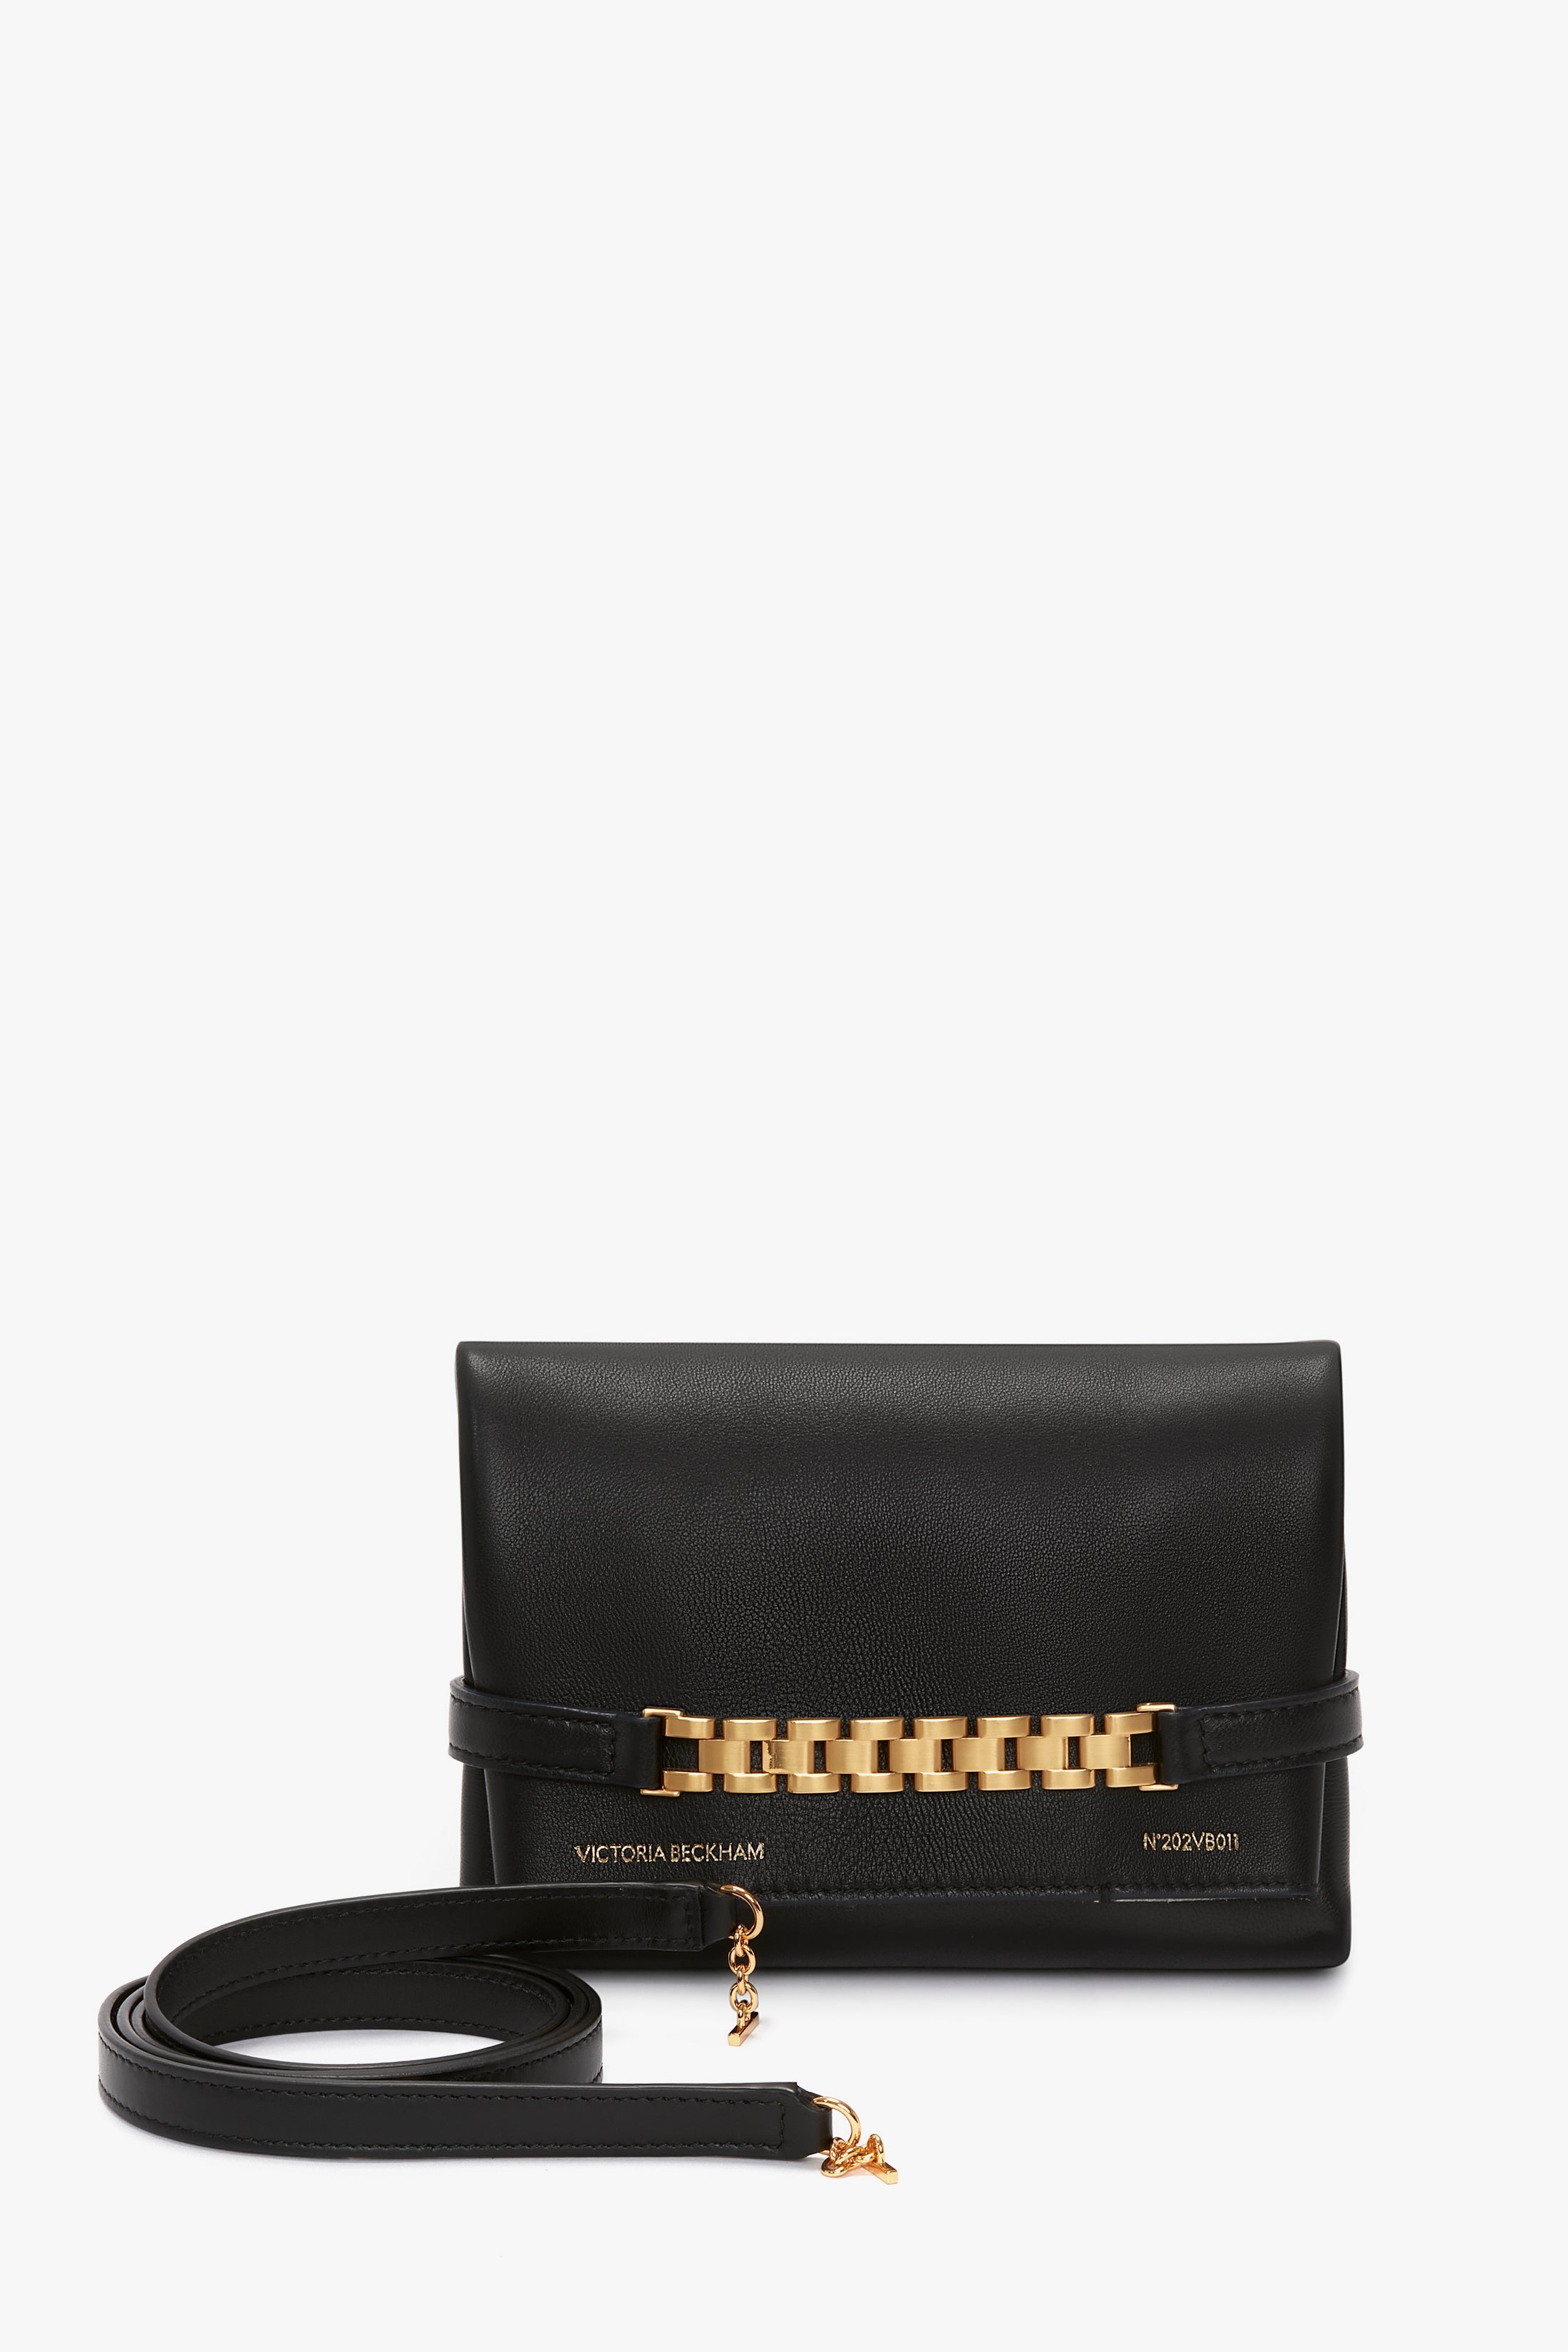 Victoria Beckham Black Mini Chain Bag